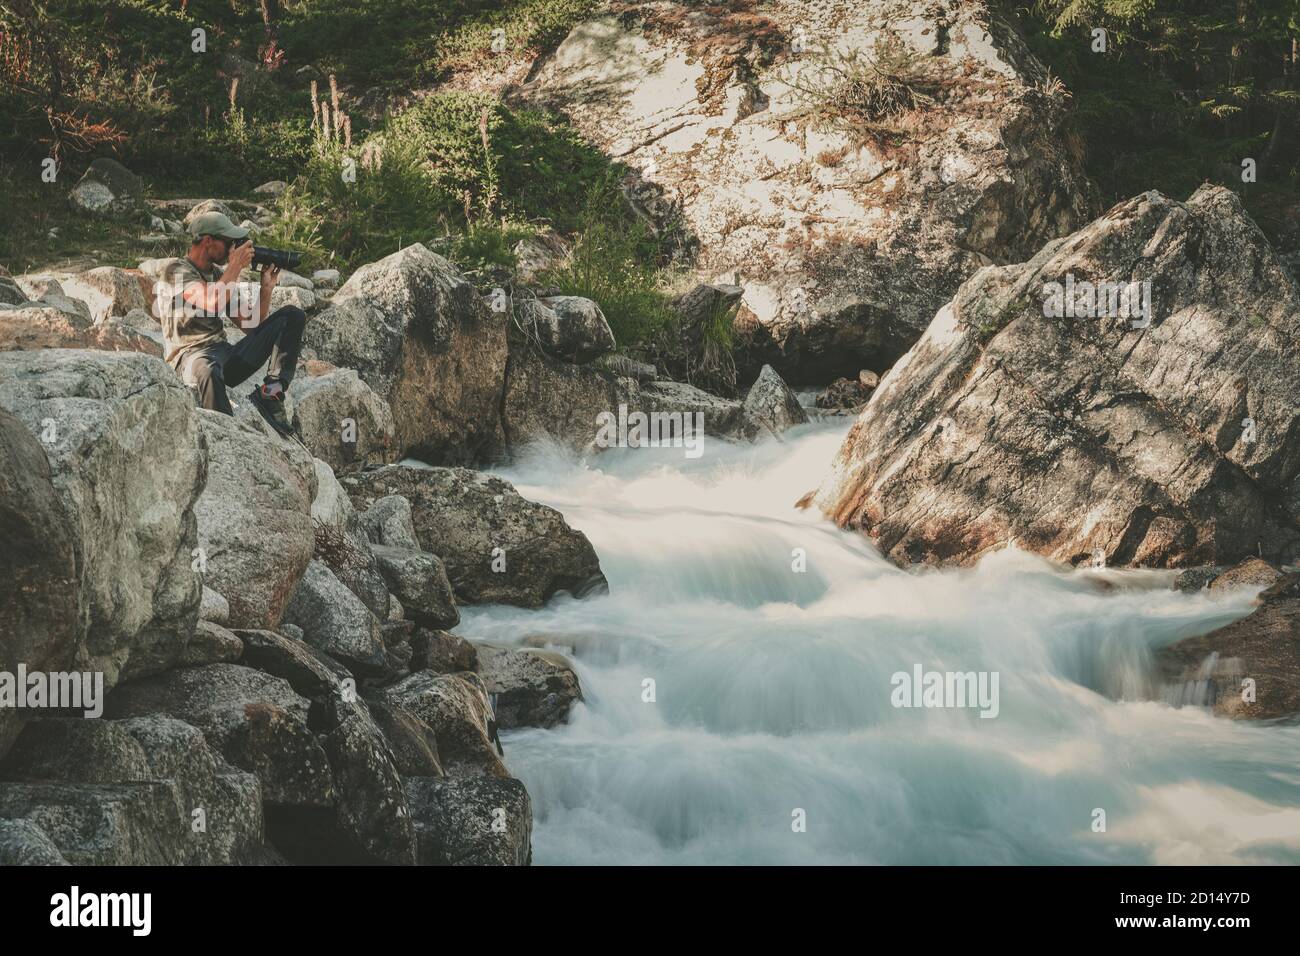 Professioneller Landschaftsfotograf in den 40er Jahren, der Bilder vom malerischen alpinen Wasserfall fotografiert. Branchenthema Reise- und Landschaftsfotografie. Stockfoto